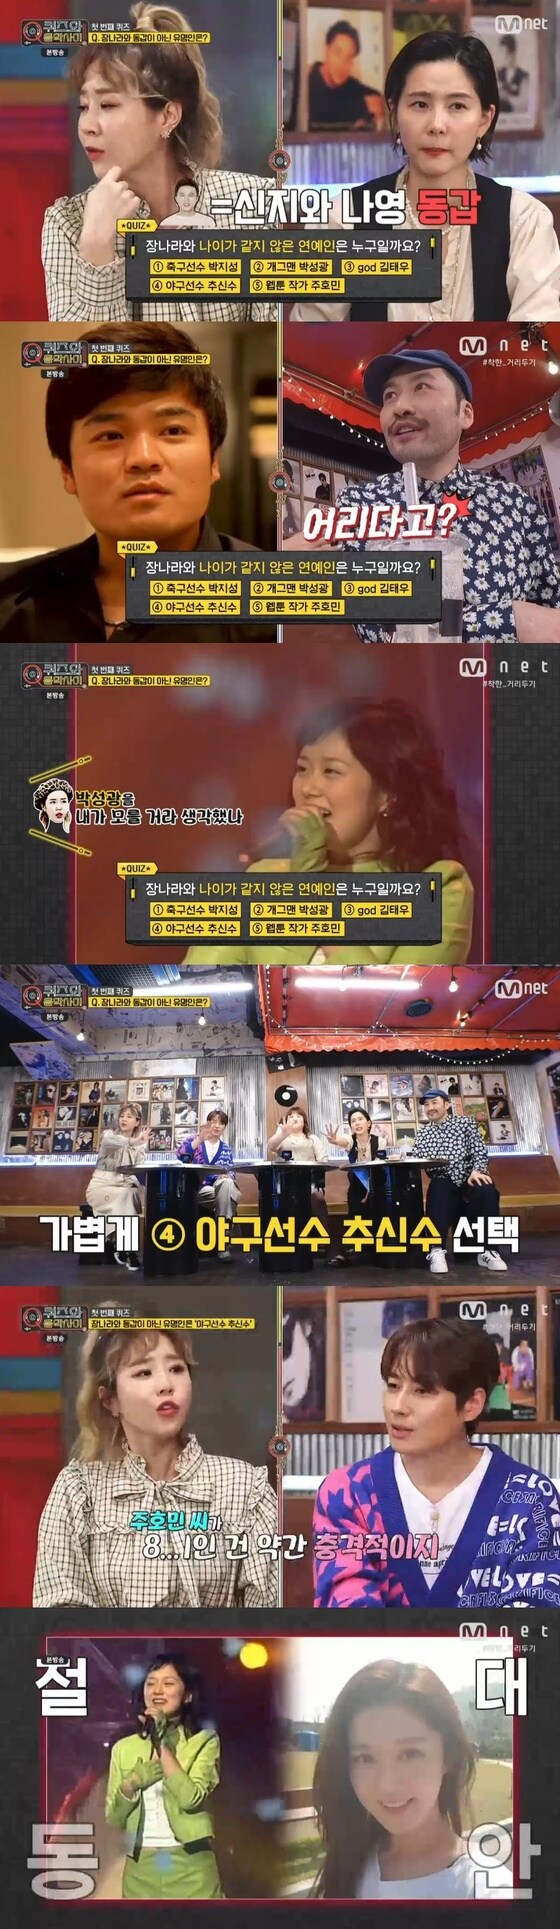 Mnet '퀴즈와 음악사이' 캡처 © 뉴스1